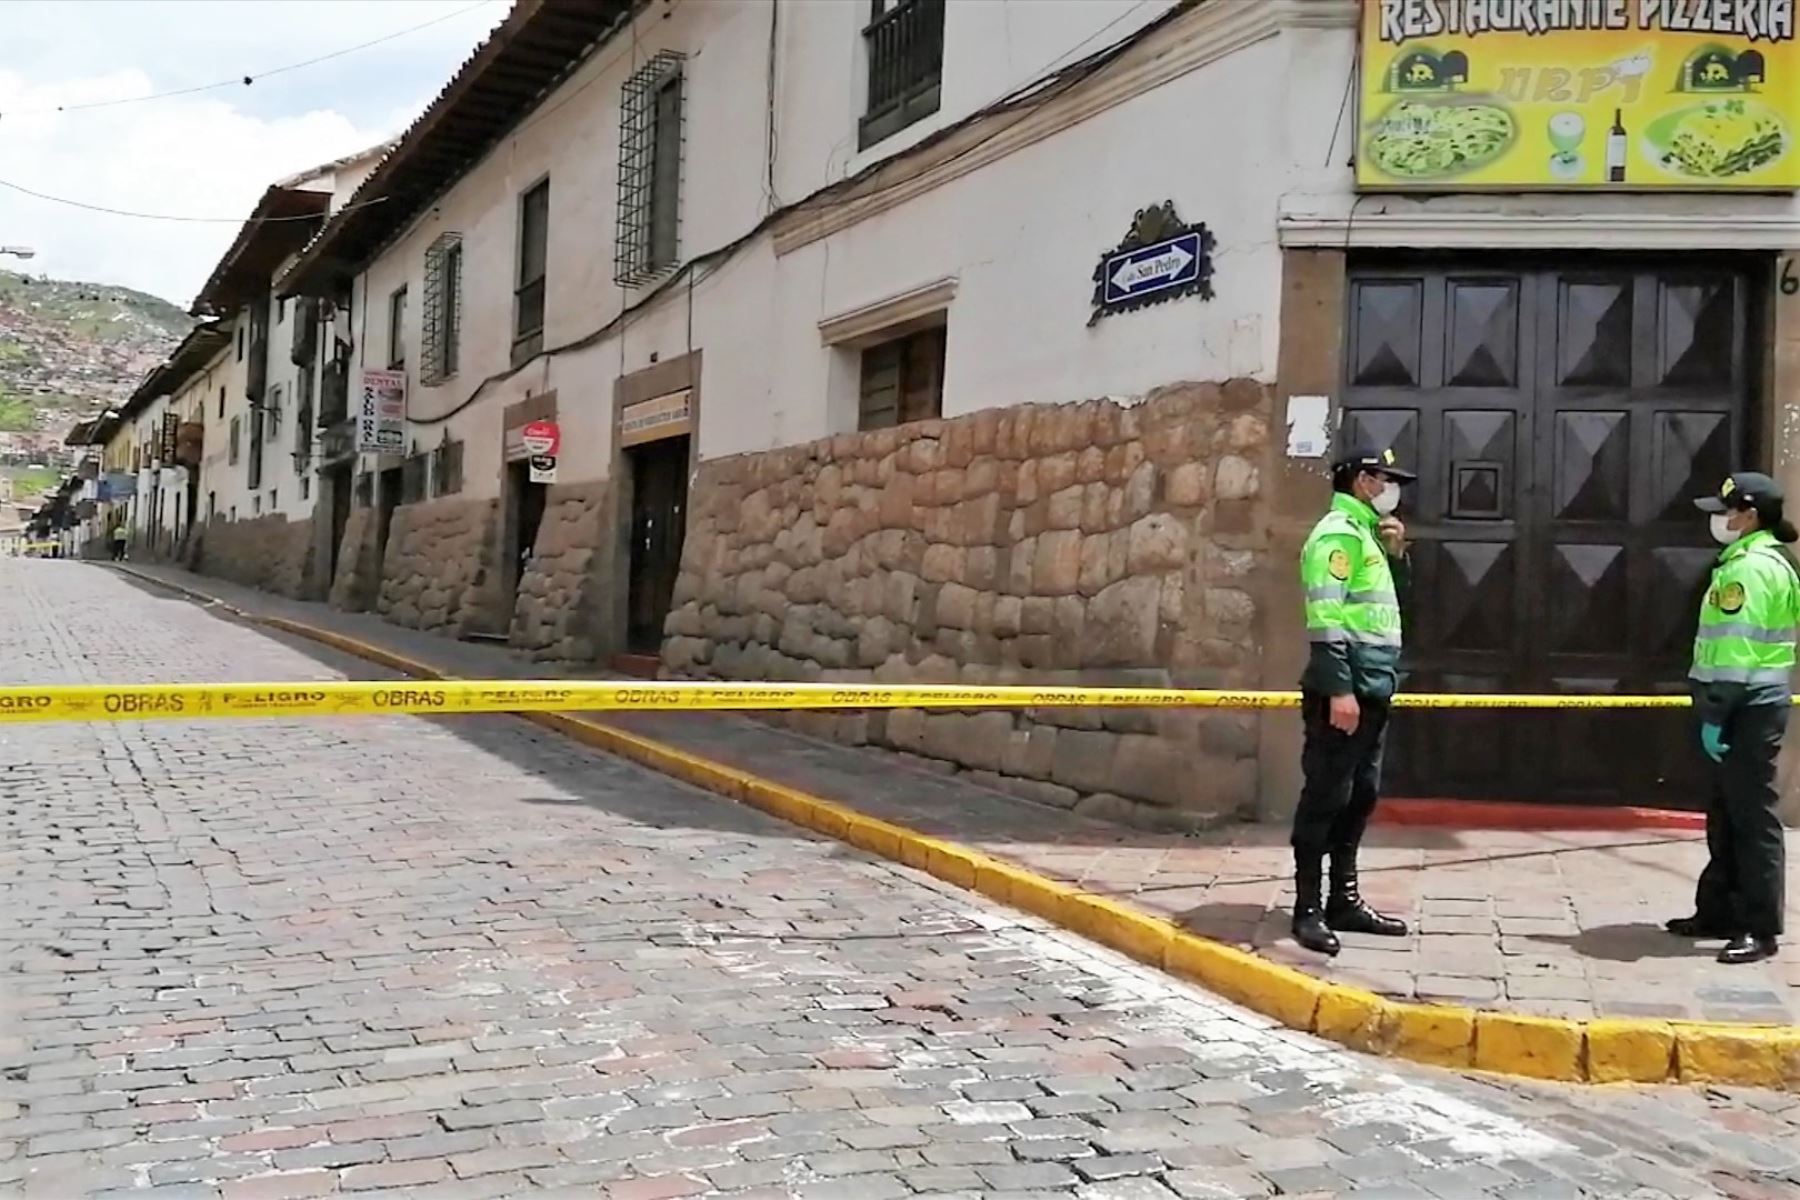 Policía cerró el tránsito de personas y vehículos por la calle donde funciona el hotel que reportó la muerte de un turista chino.